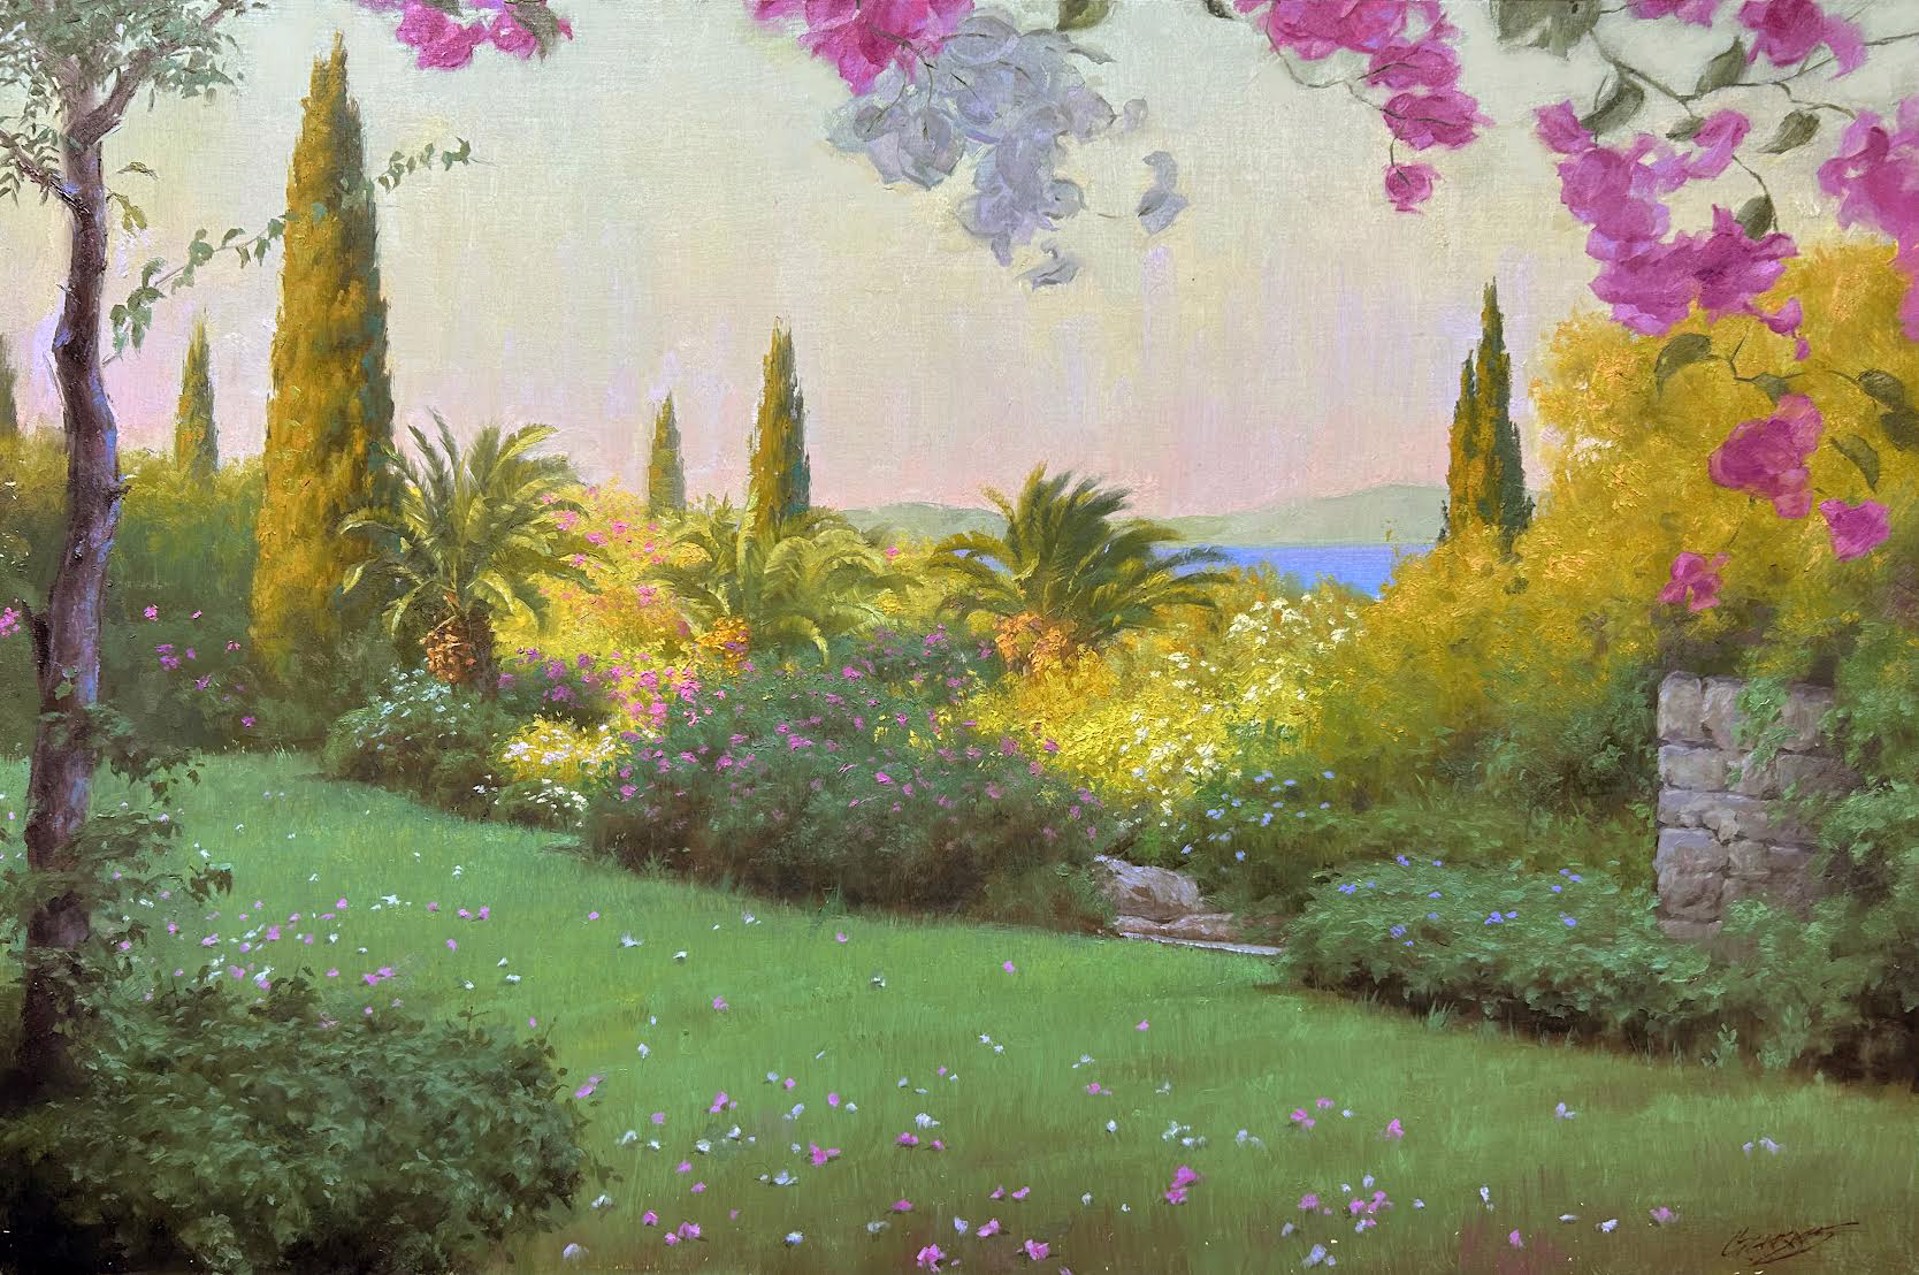 A Mediterranean Garden by Gavin Glakas